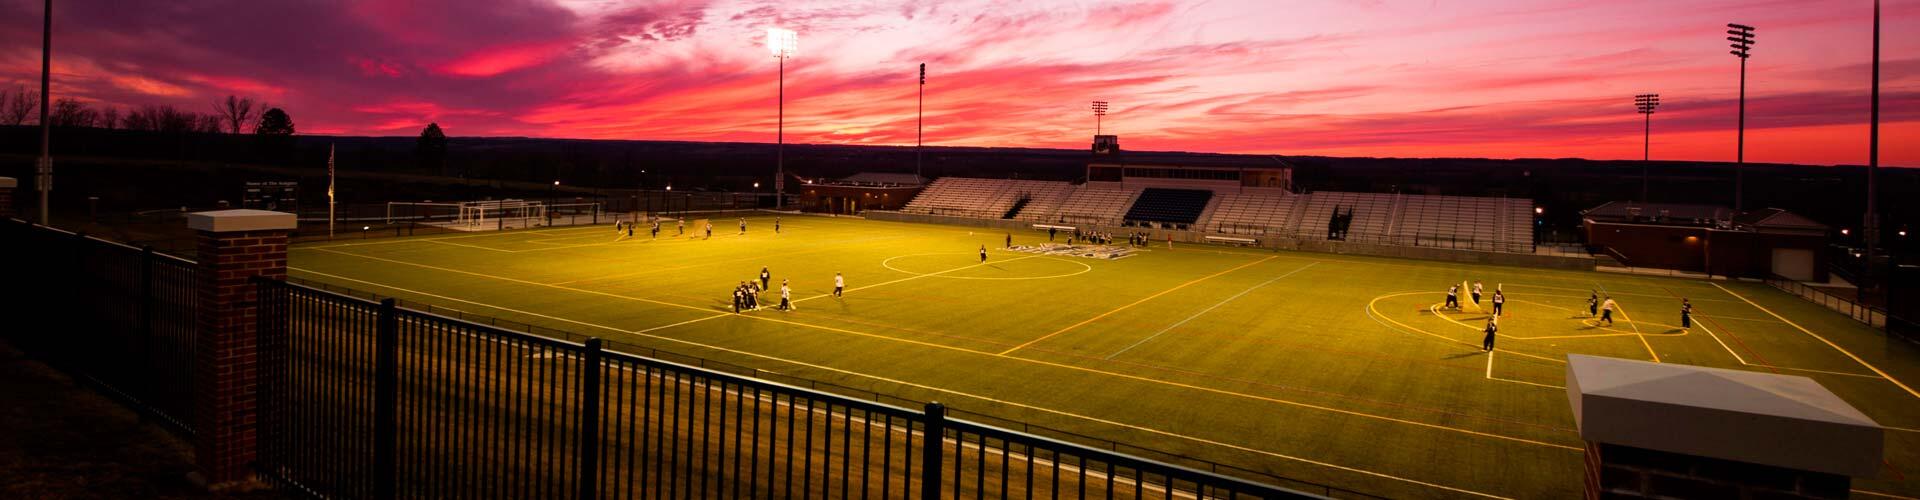 Athletic stadium at sunset.